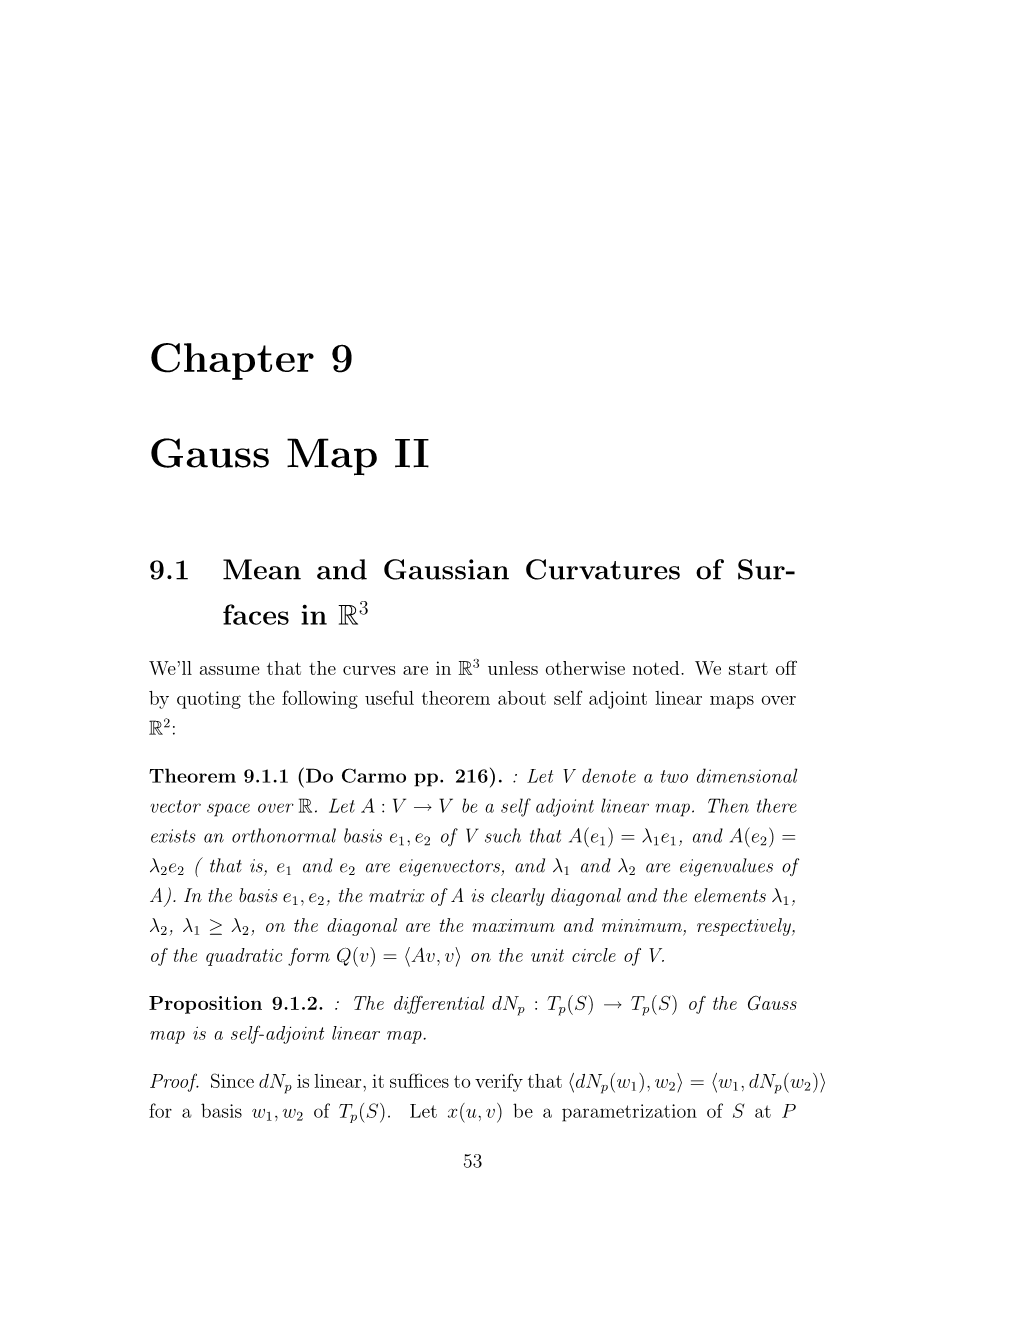 Chapter 9 Gauss Map II